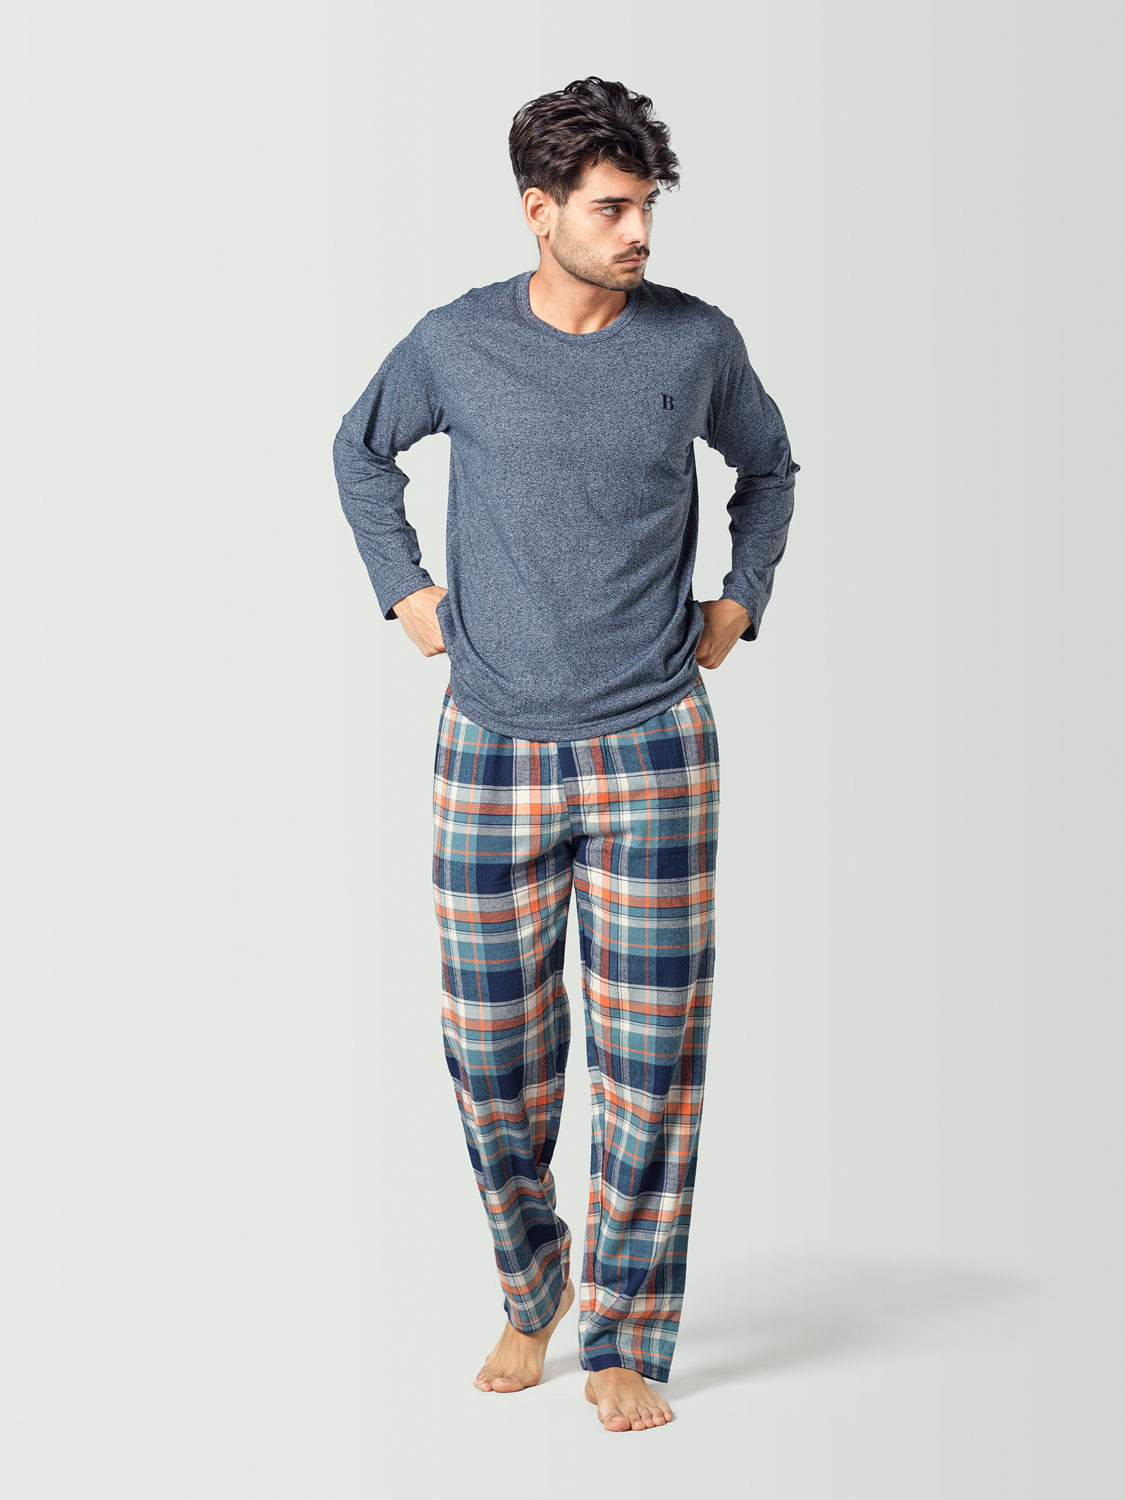 Pijama para hombre con camiseta de manga larga azul y pantalón a cuadros azul marino